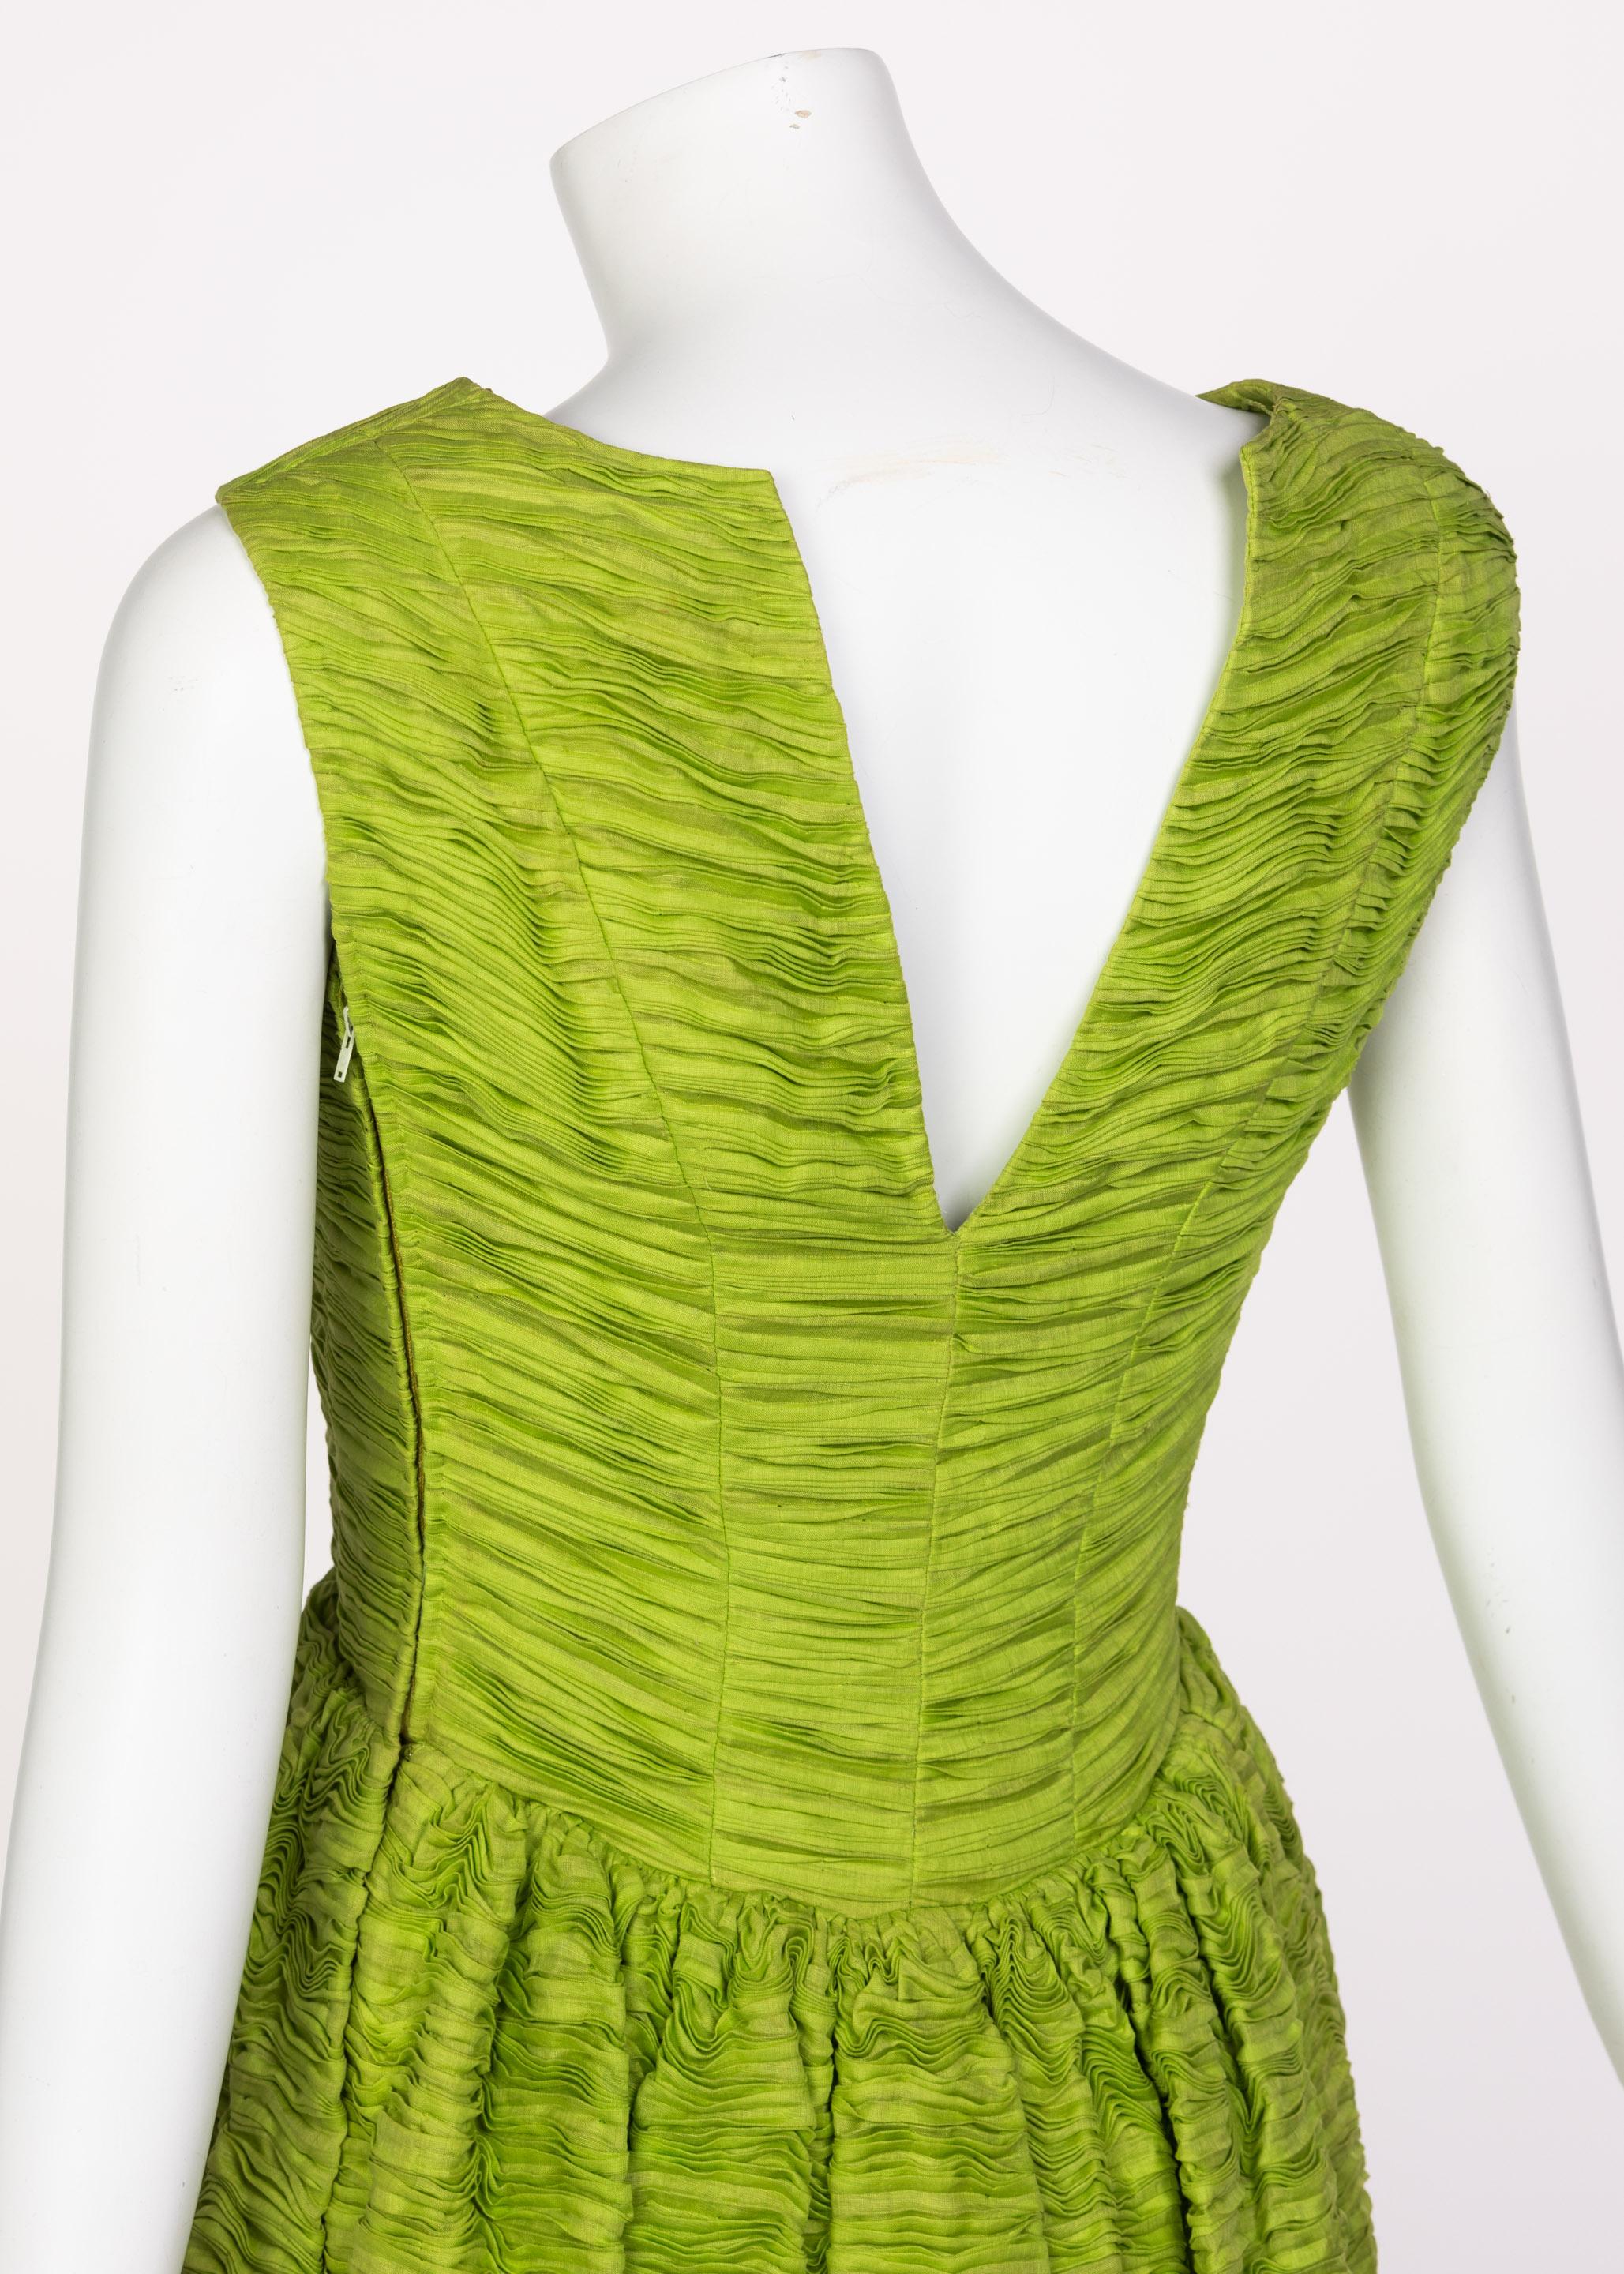 Sybil Connolly Couture, robe en lin plissé vert, années 60 en vente 2